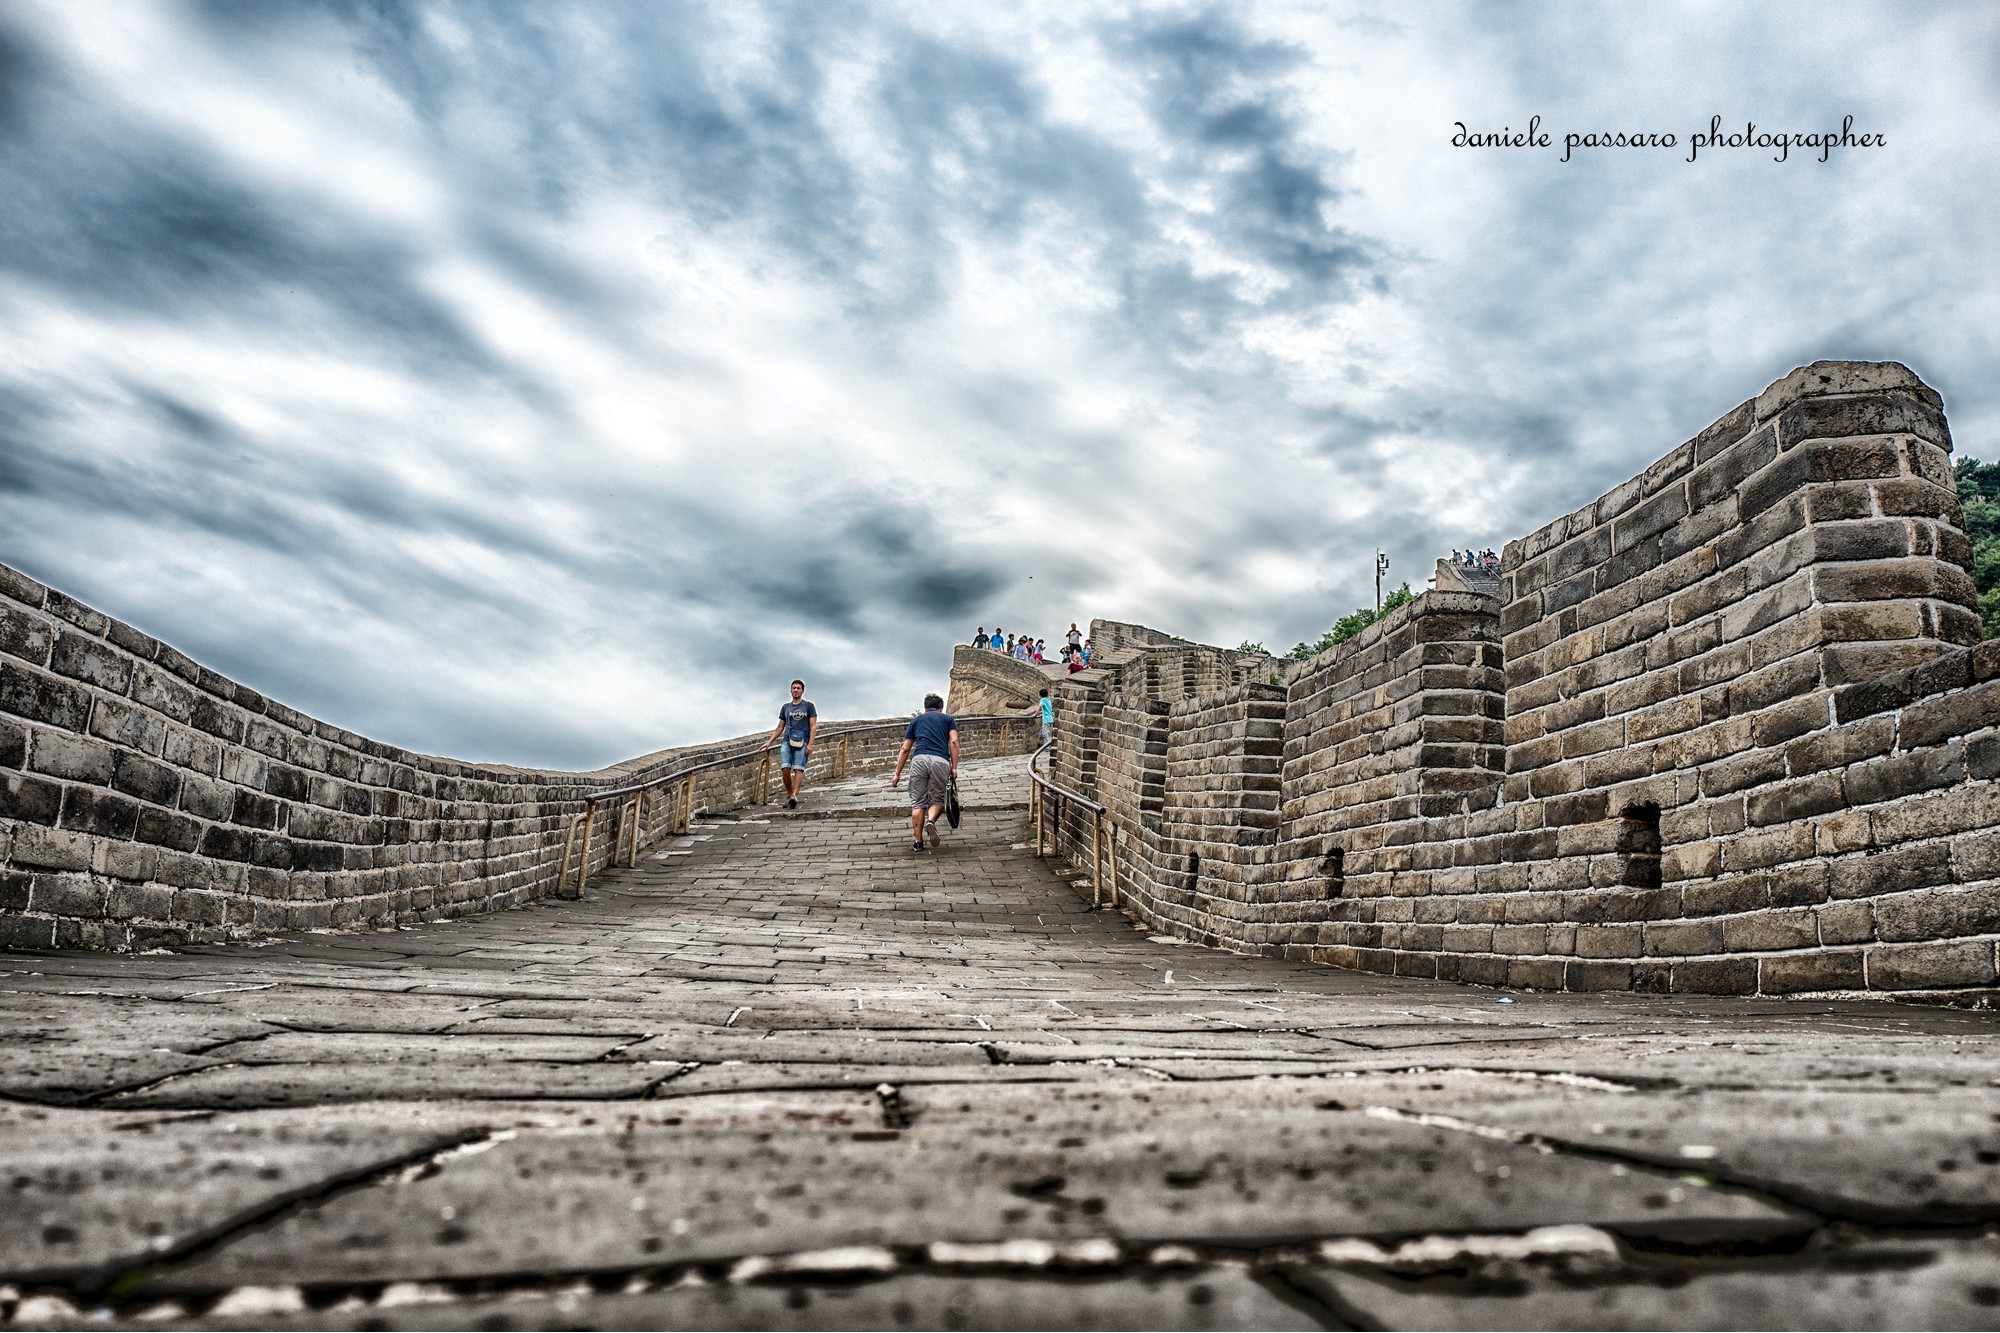 Pechino - the great wall...